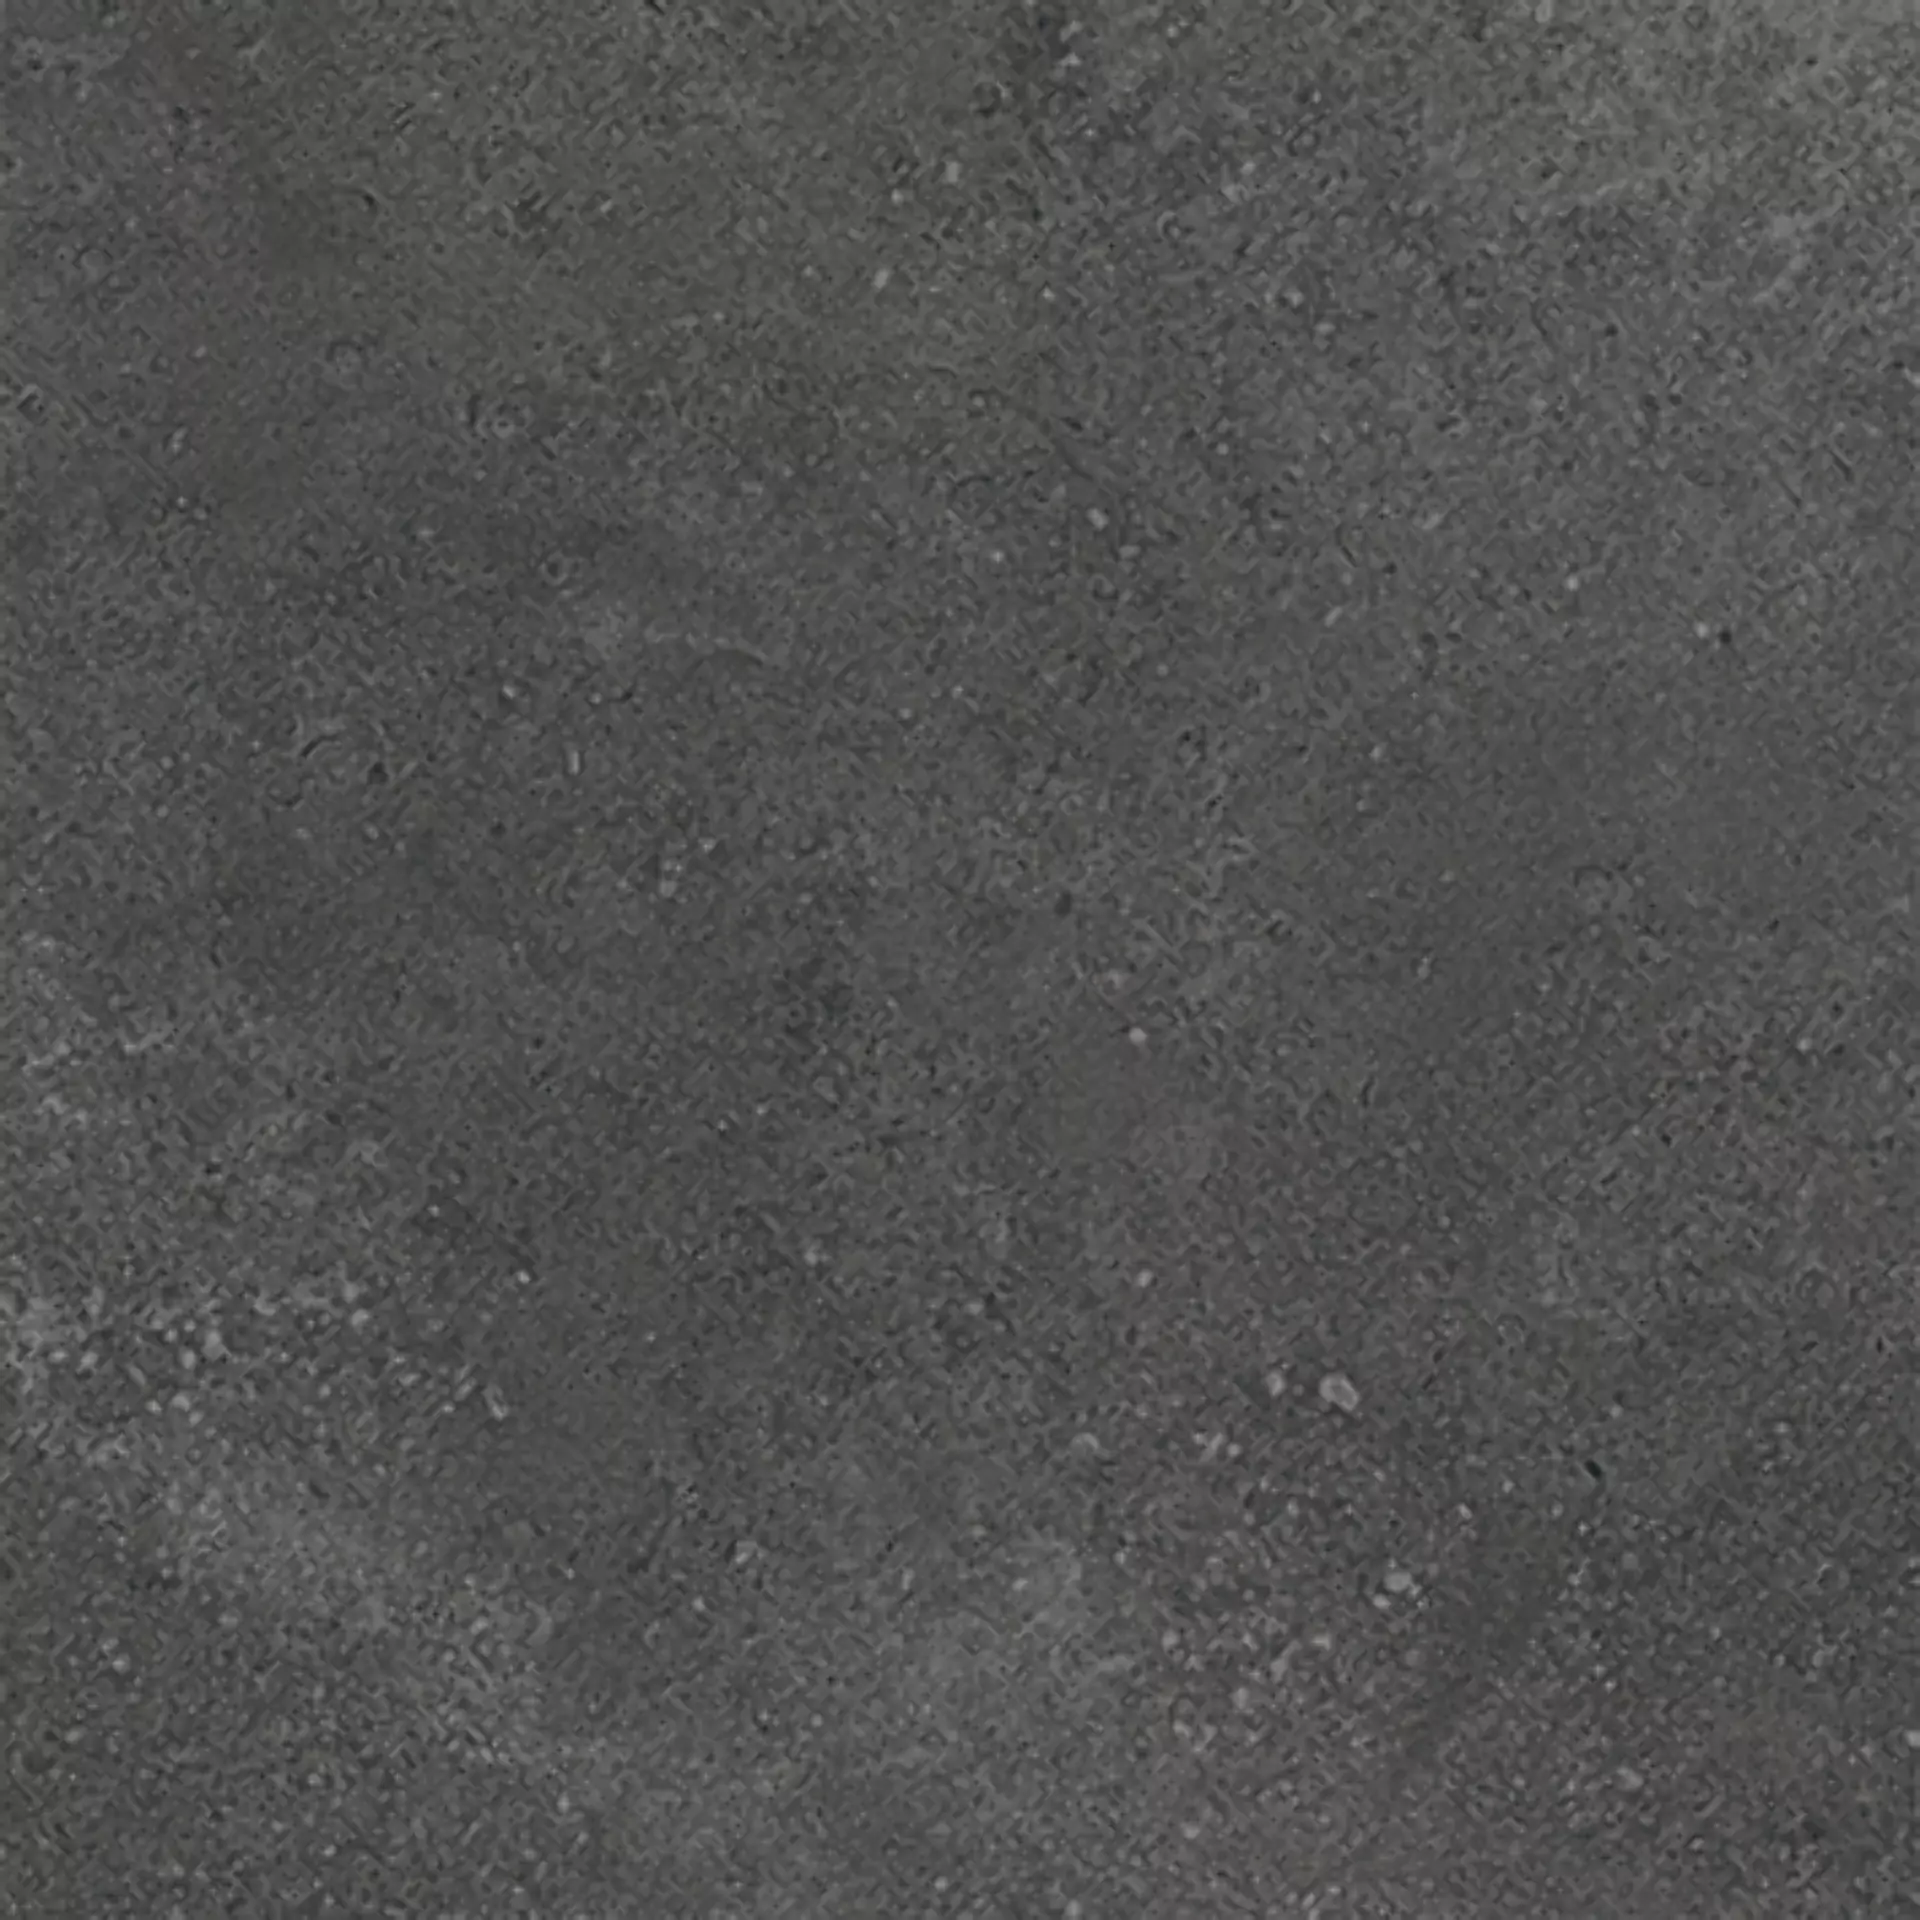 Wandfliese,Bodenfliese Villeroy & Boch Hudson Magma Matt Magma 2575-SD8M matt 30x30cm rektifiziert 10mm